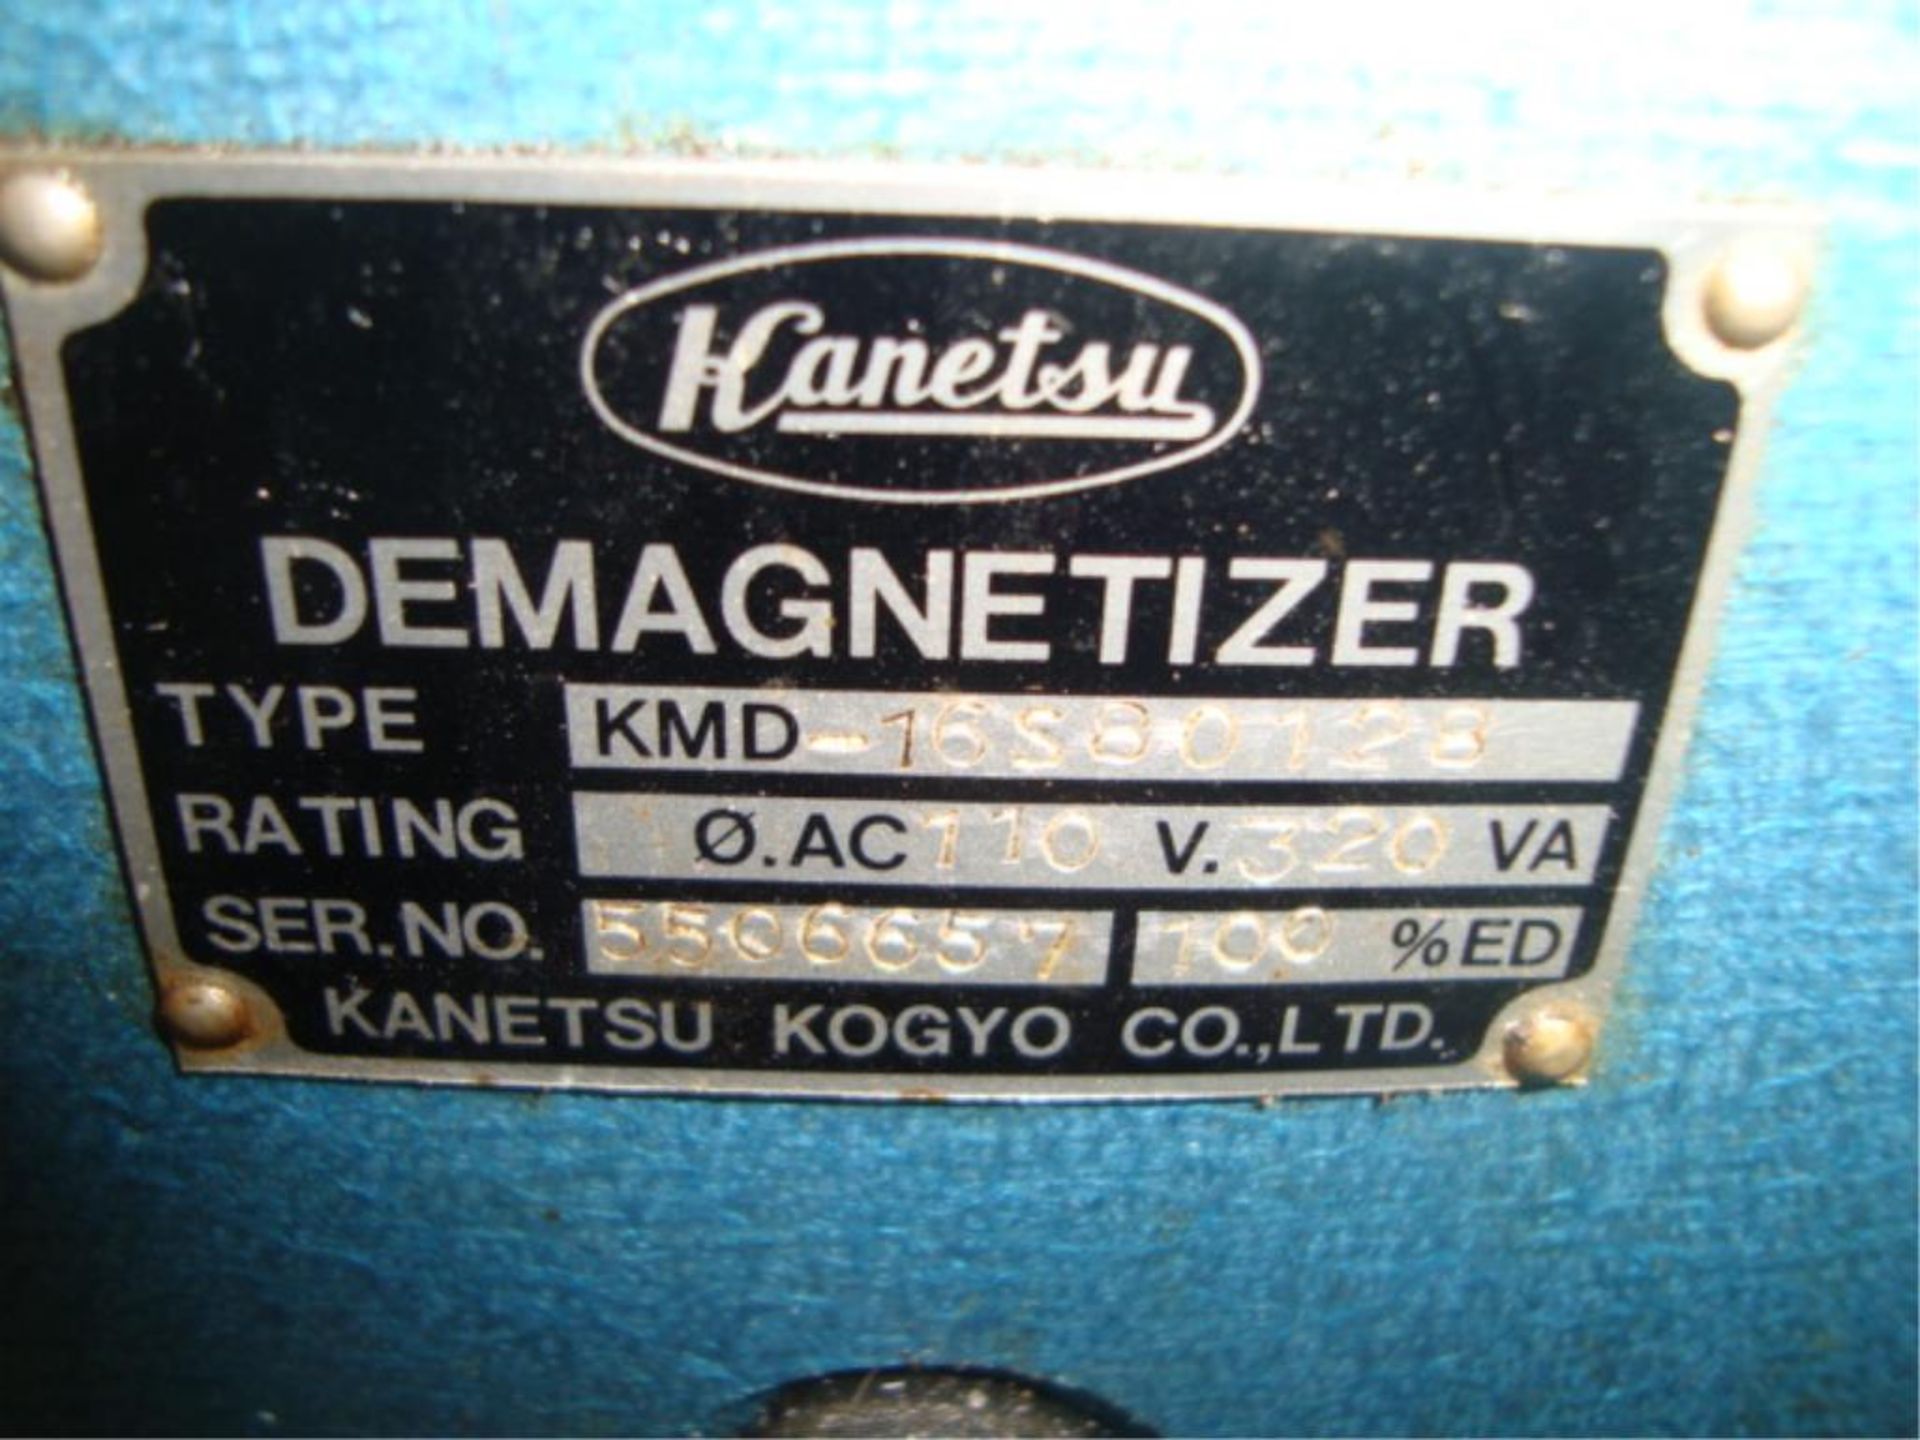 Demagnetizer - Image 2 of 2